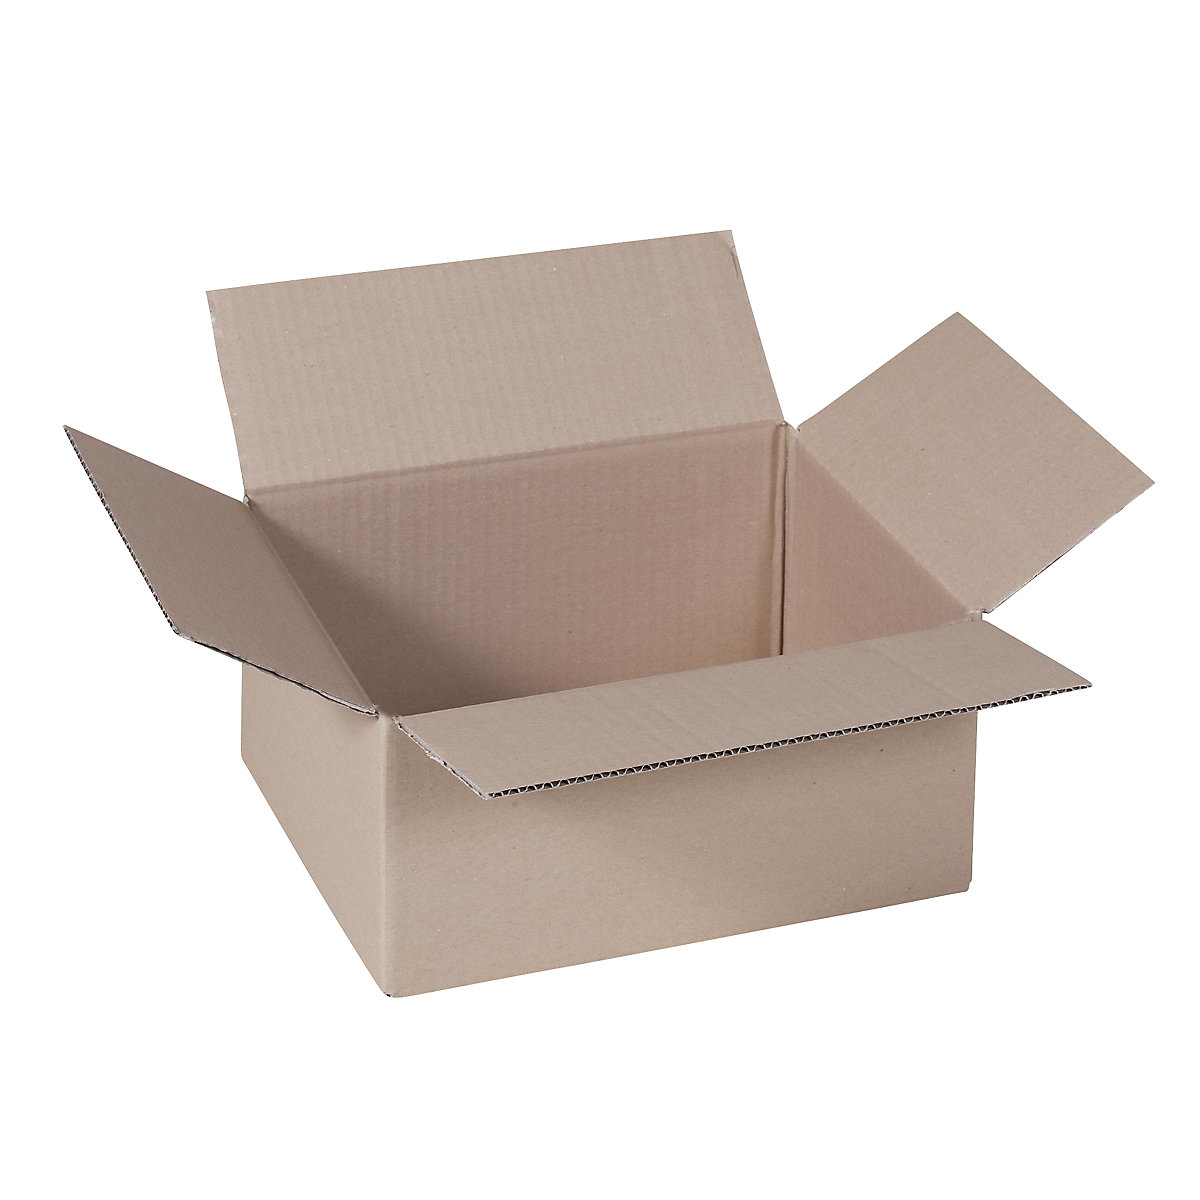 Sklopiva kartonska kutija, FEFCO 0201, od 1-valnog kartona, unutarnje dimenzije 430 x 305 x 180 mm, pak. 50 kom.-5